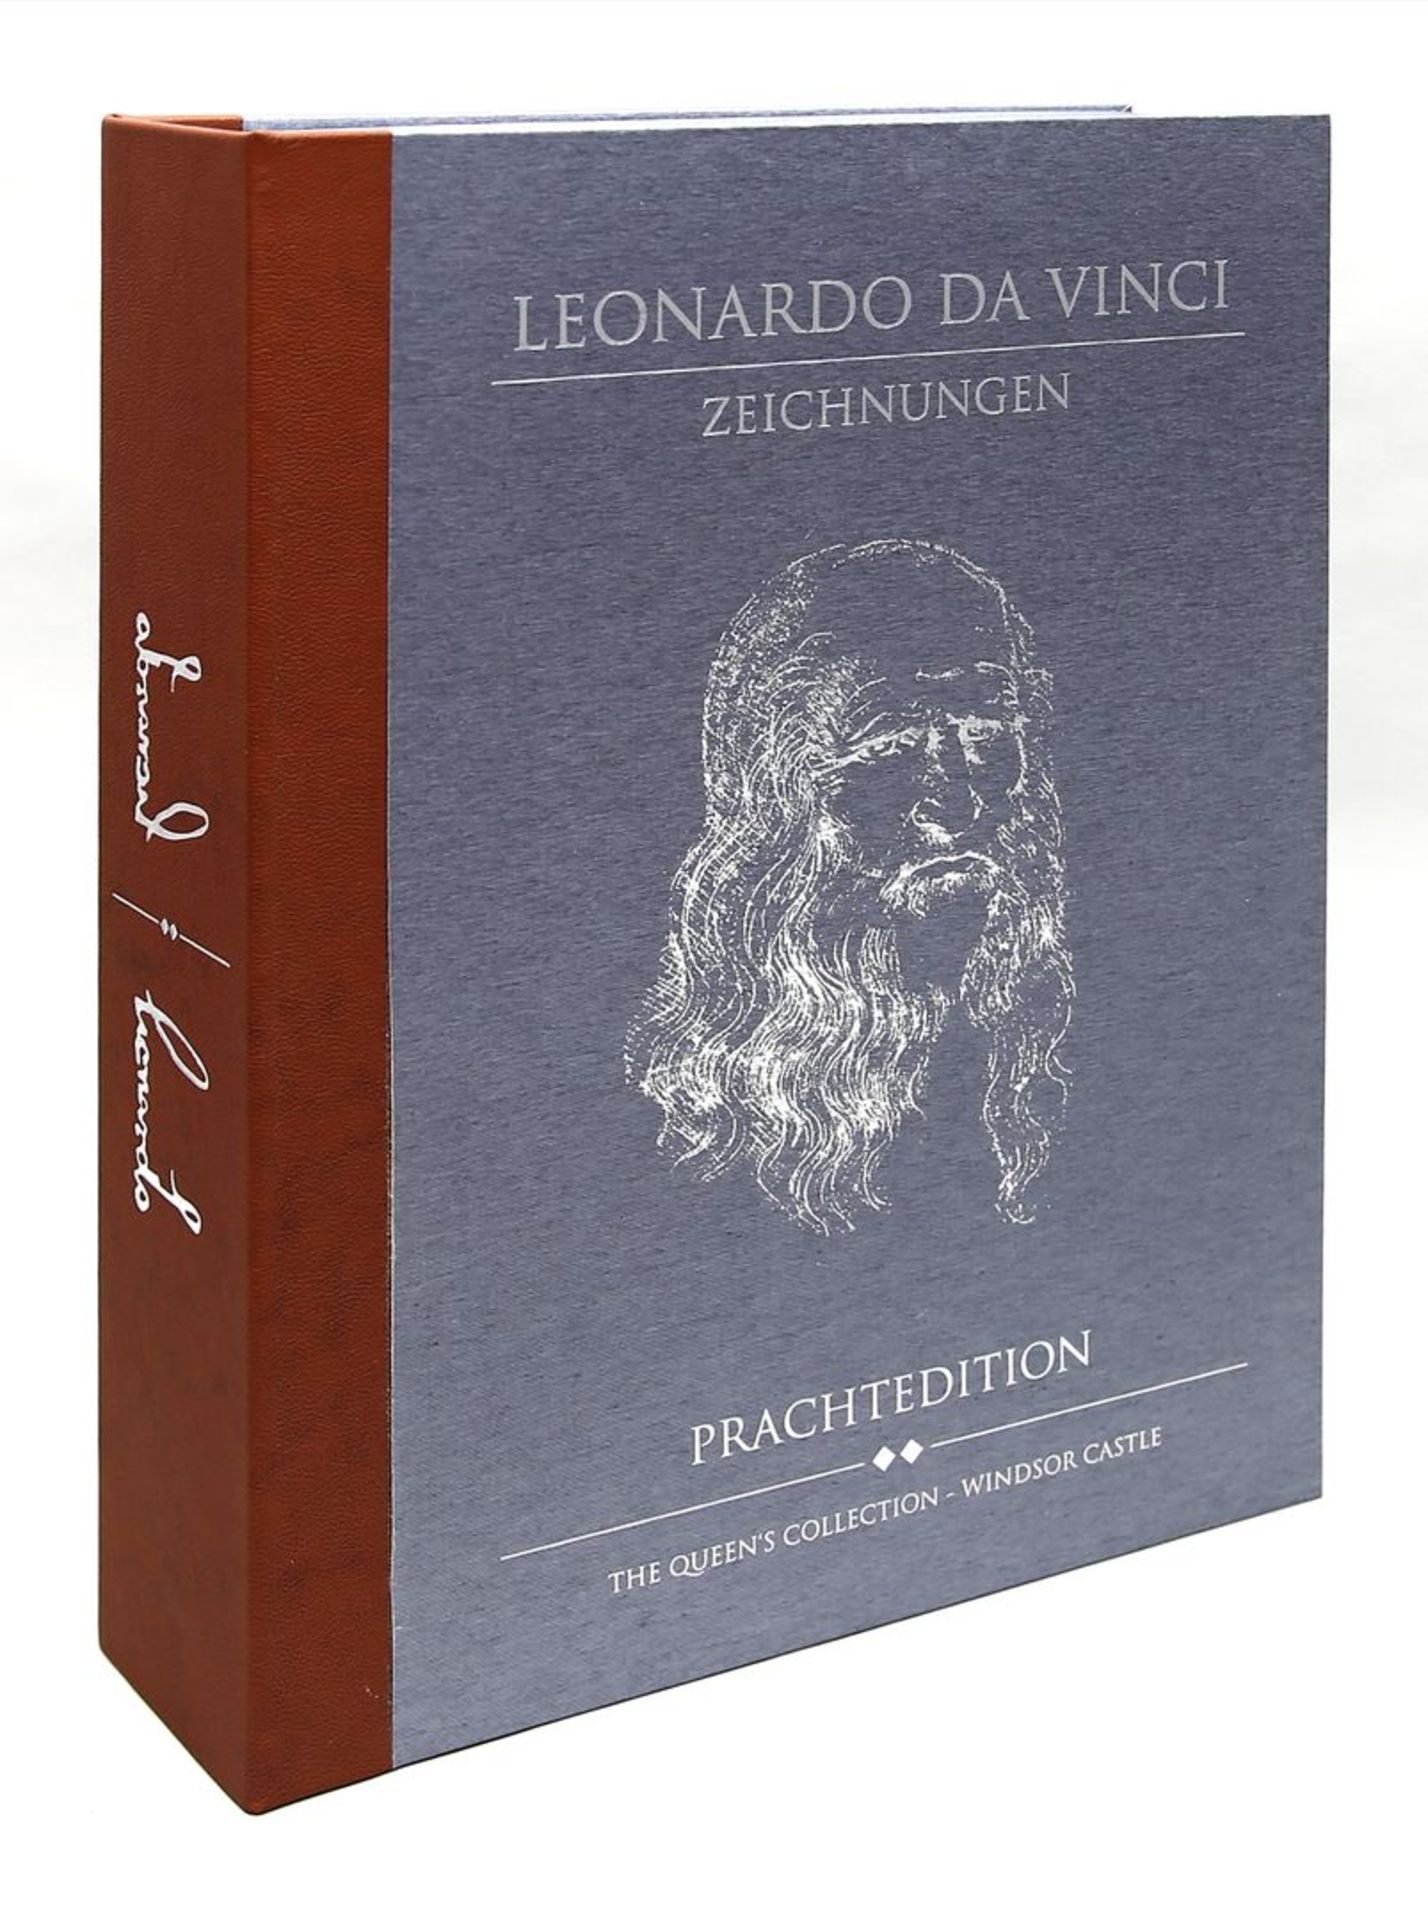 Leonardo da Vinci: Zeichnungen. Anatomische Studien,. - Bild 3 aus 3